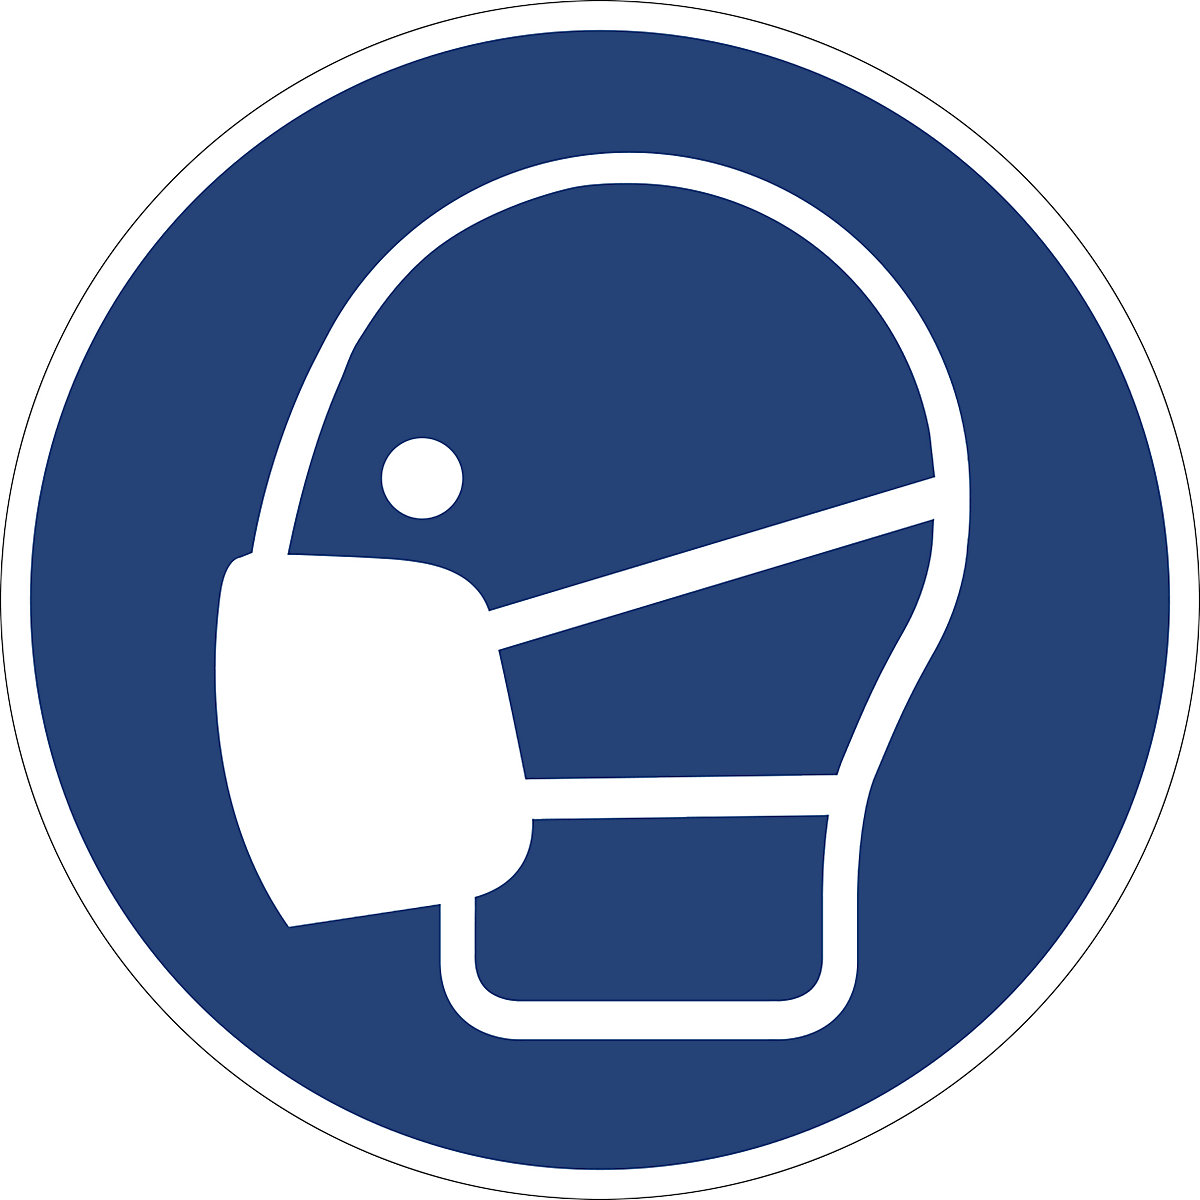 Příkazová značka, Použijte lehkou ochranu dýchacích cest, bal.j. 10 ks, plast, Ø 200 mm